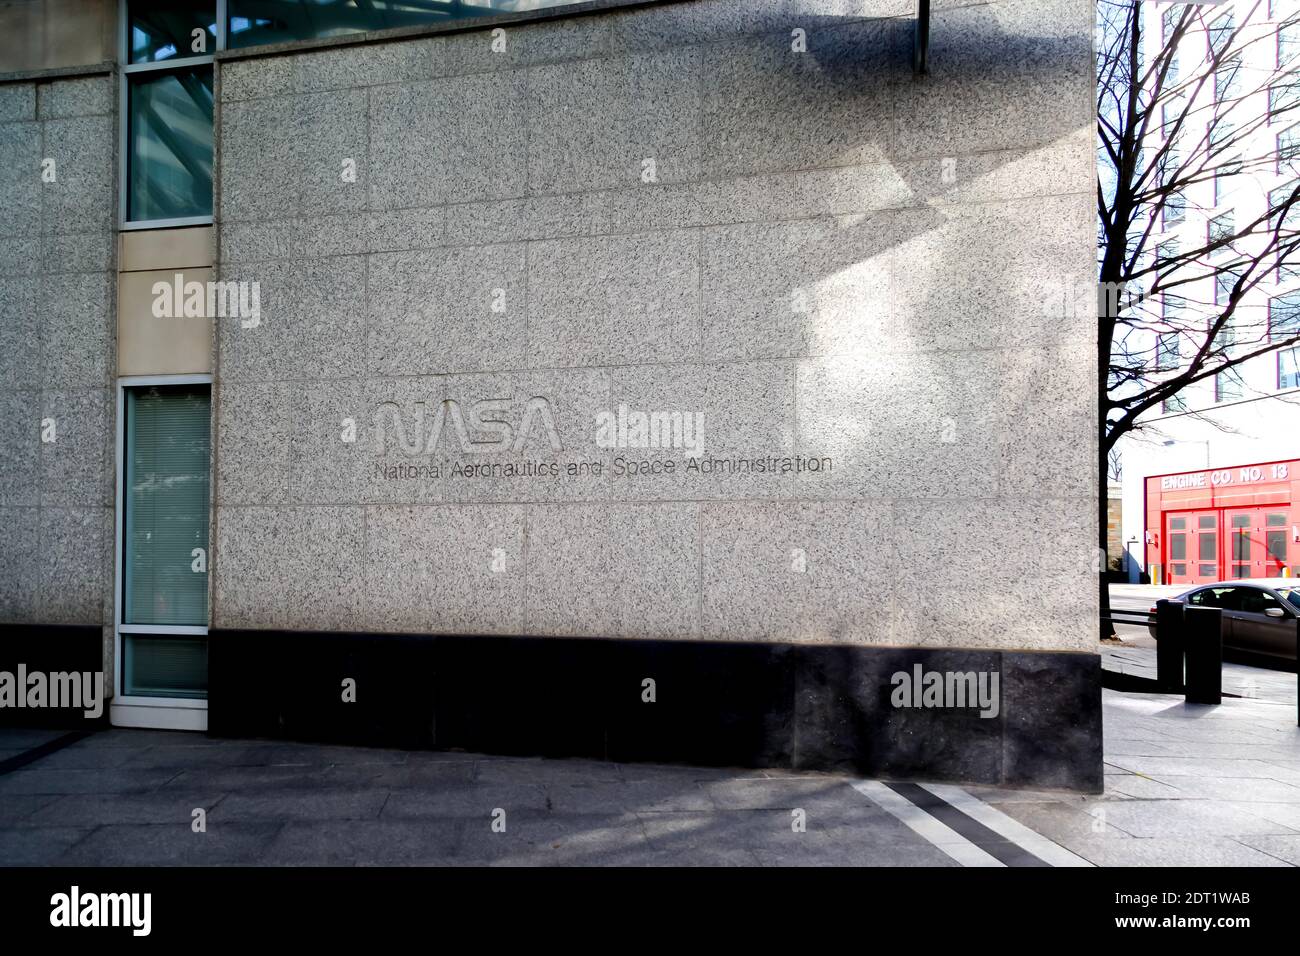 La NASA signe à l'extérieur de leur siège social à Washington, D.C. Banque D'Images